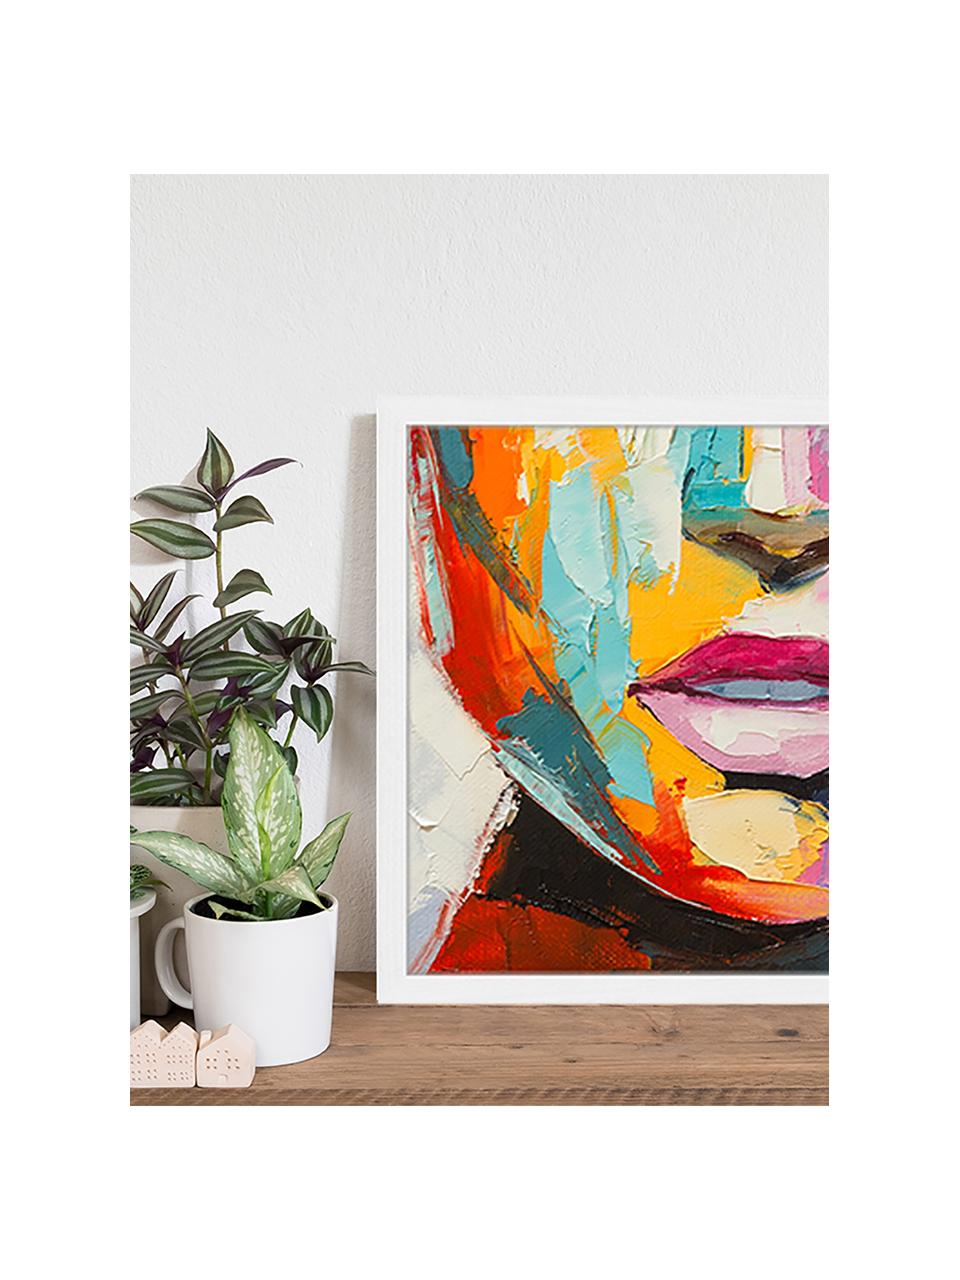 Lámina decorativa Colorful Emotions, Multicolor, An 53 x Al 43 cm